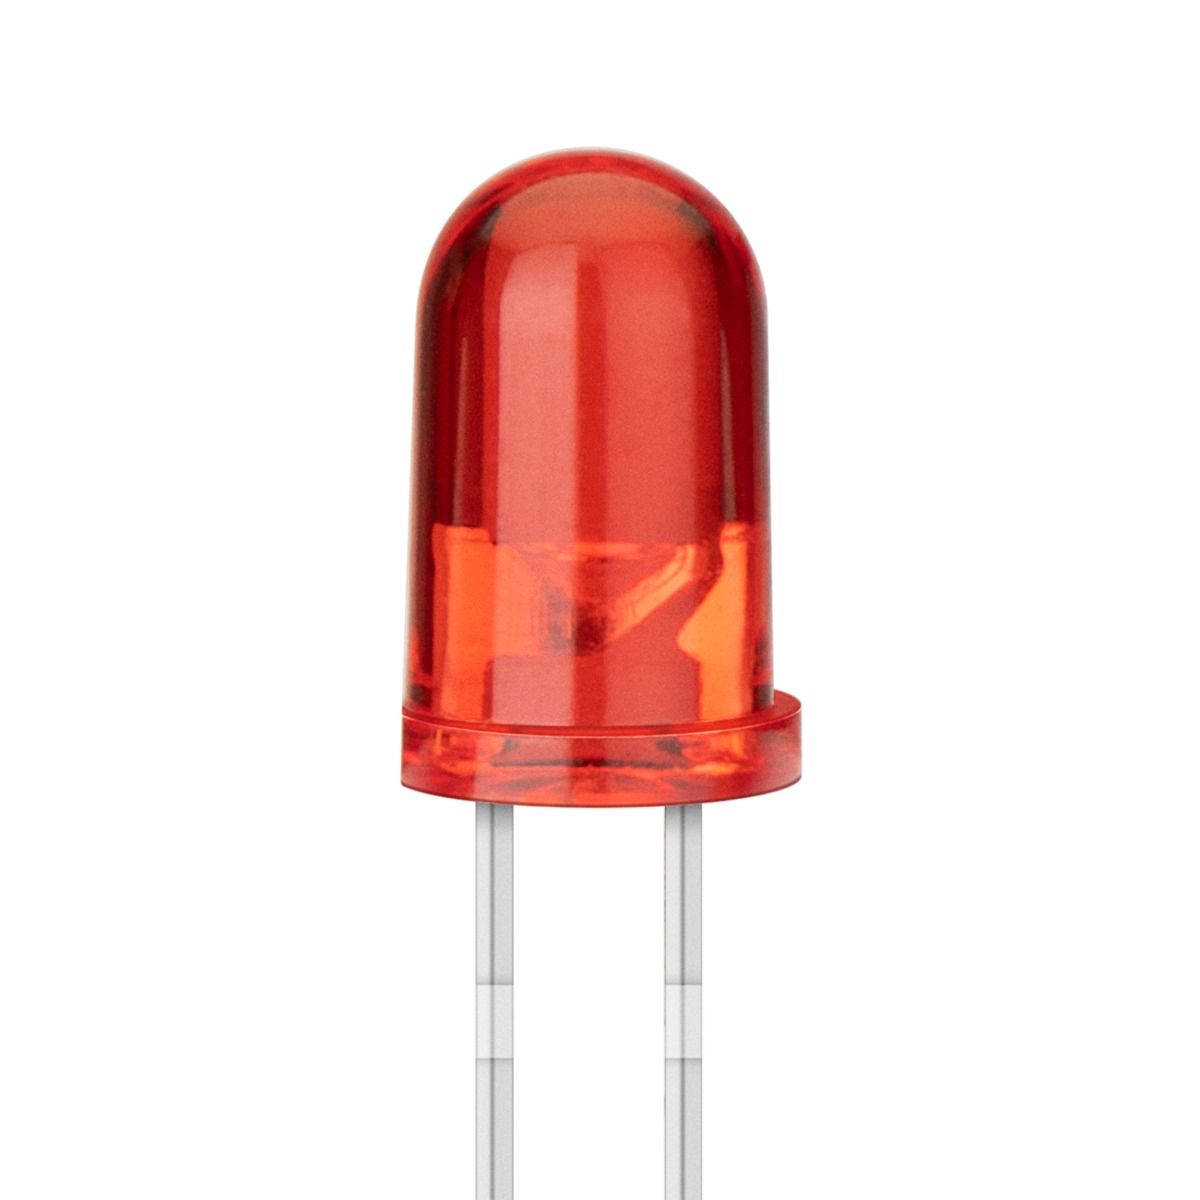 LED de 5 mm, color rojo claro Steren Tienda en Línea